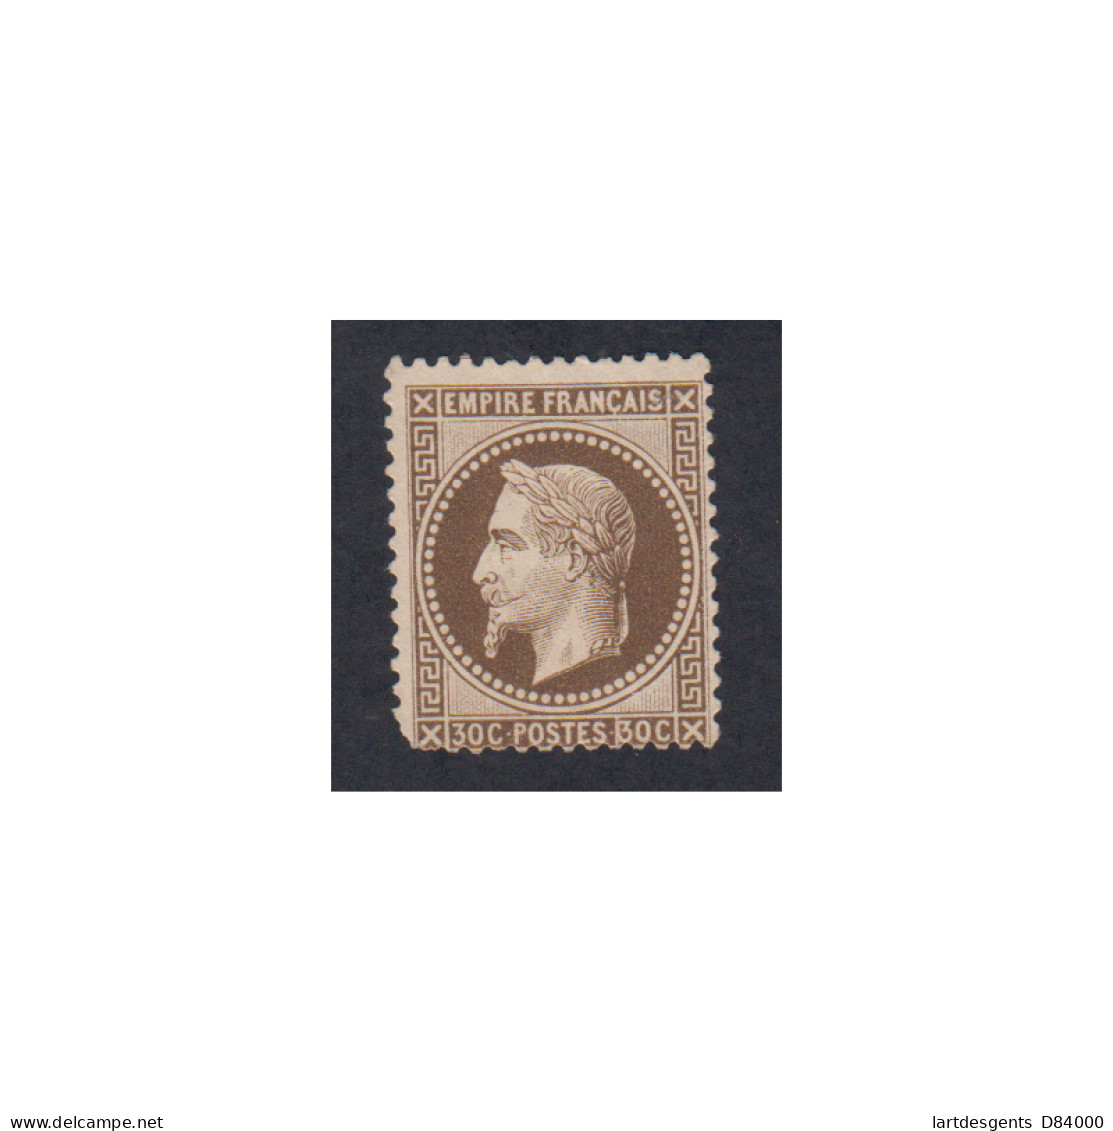 Timbre France N°30 Napoléon III 1867 Neuf Cote 325 Euros Lartdesgents - 1863-1870 Napoléon III Lauré